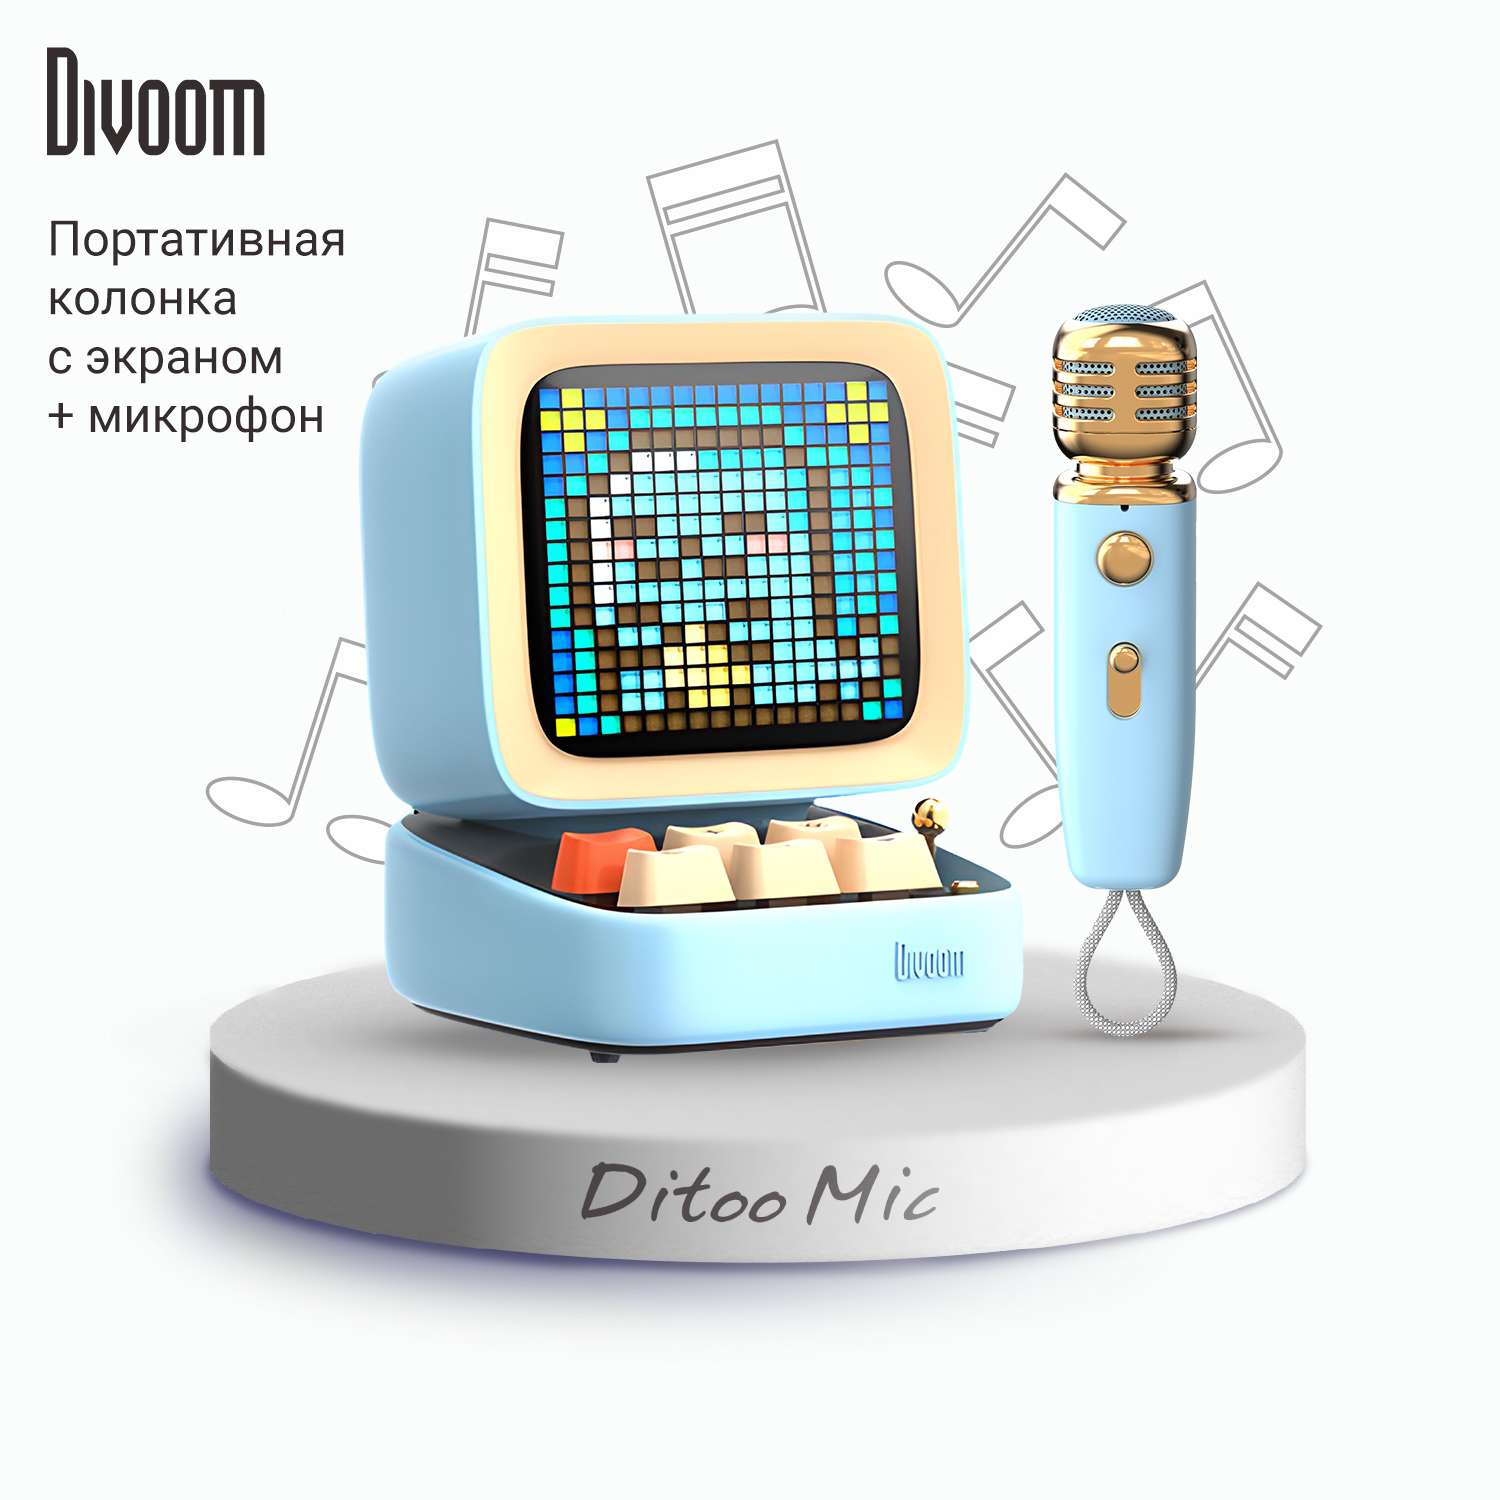 Беспроводная колонка DIVOOM портативная Ditoo Mic голубая с микрофоном и пиксельным LED-дисплеем - фото 1